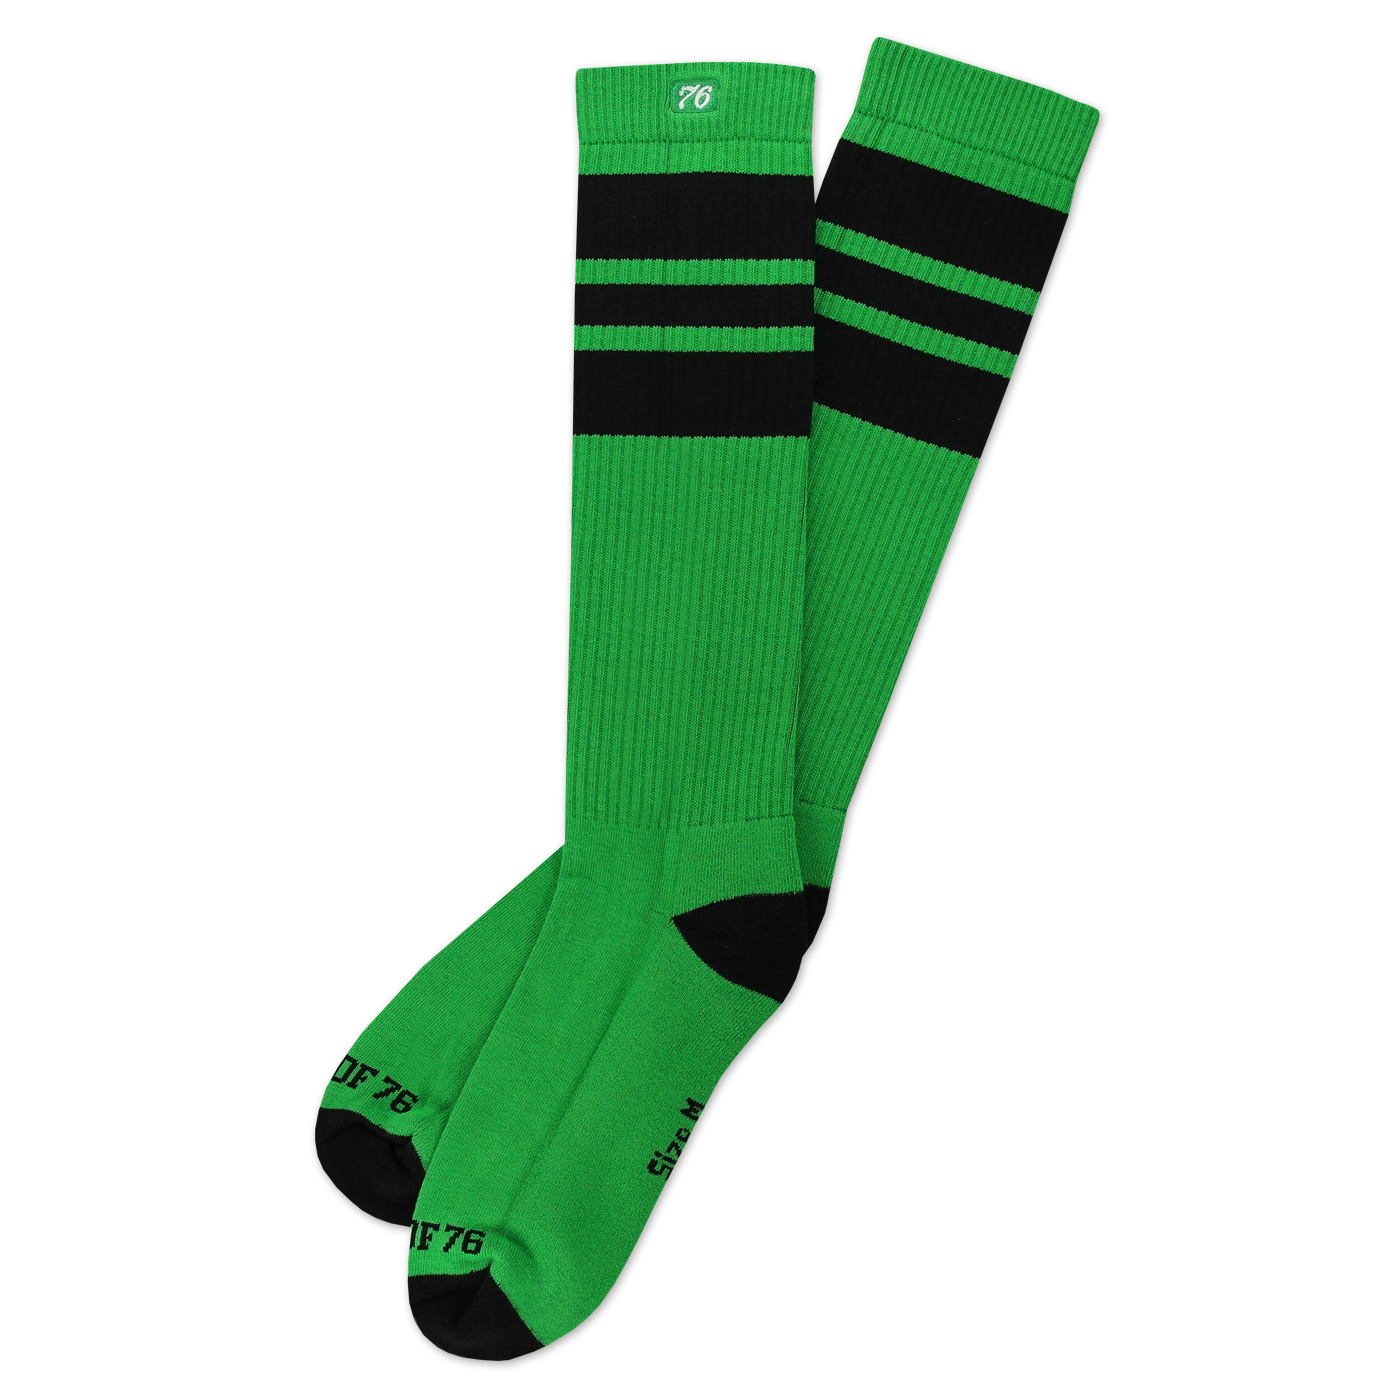 SPIRIT OF 76 Socks Blacks on Green Hi